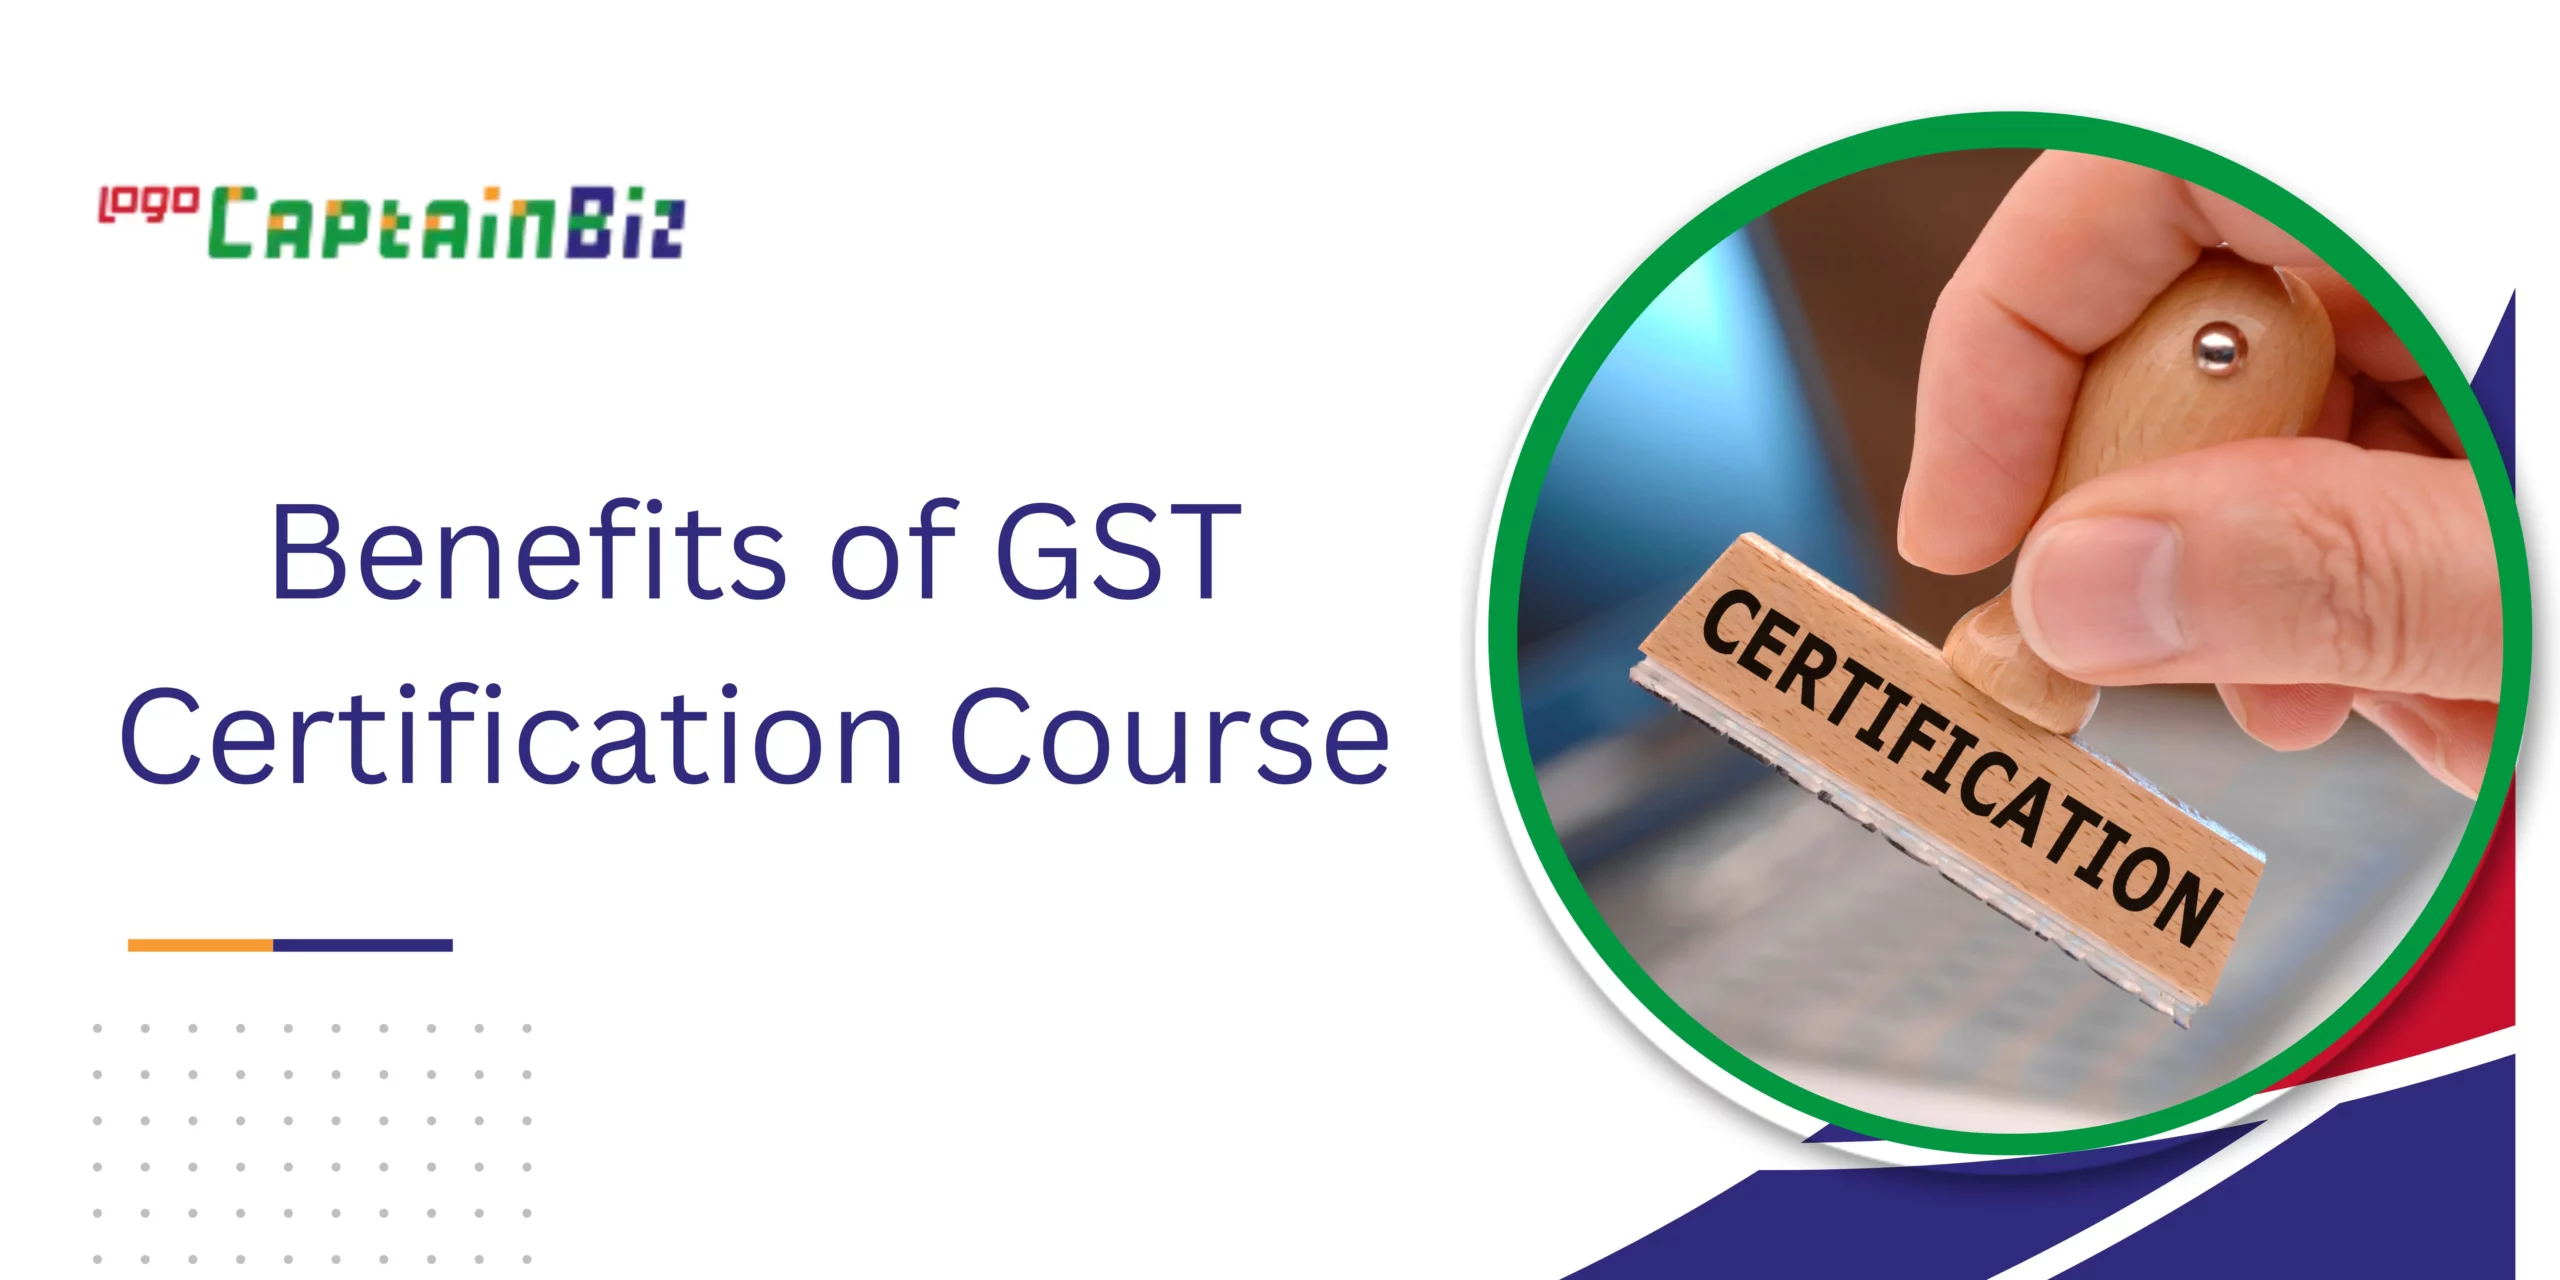 CaptainBiz: Benefits of GST Certification Course